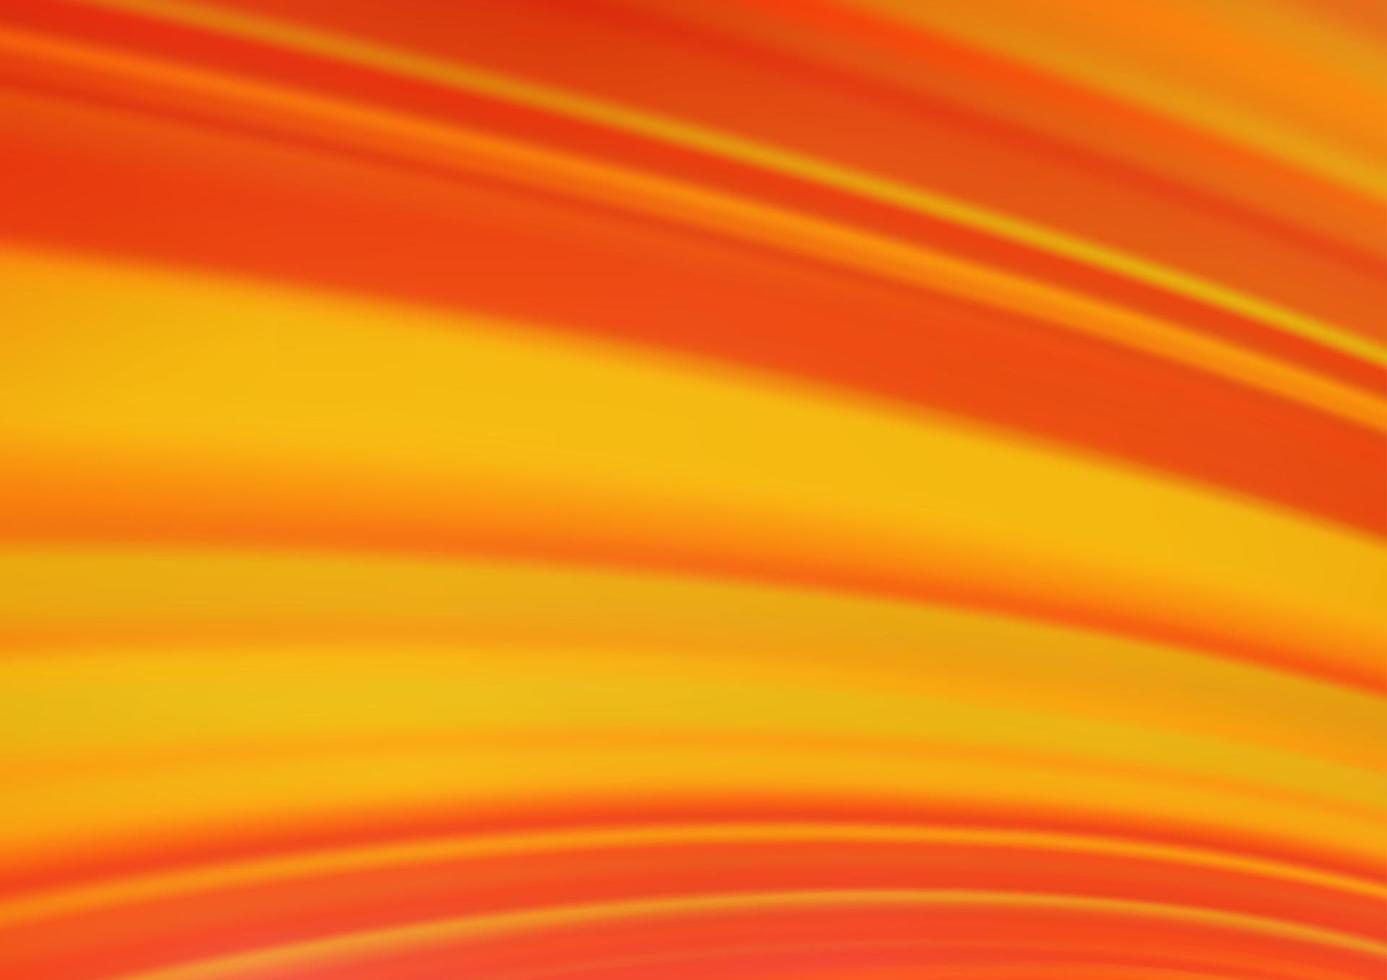 sfondo astratto vettoriale arancione chiaro.